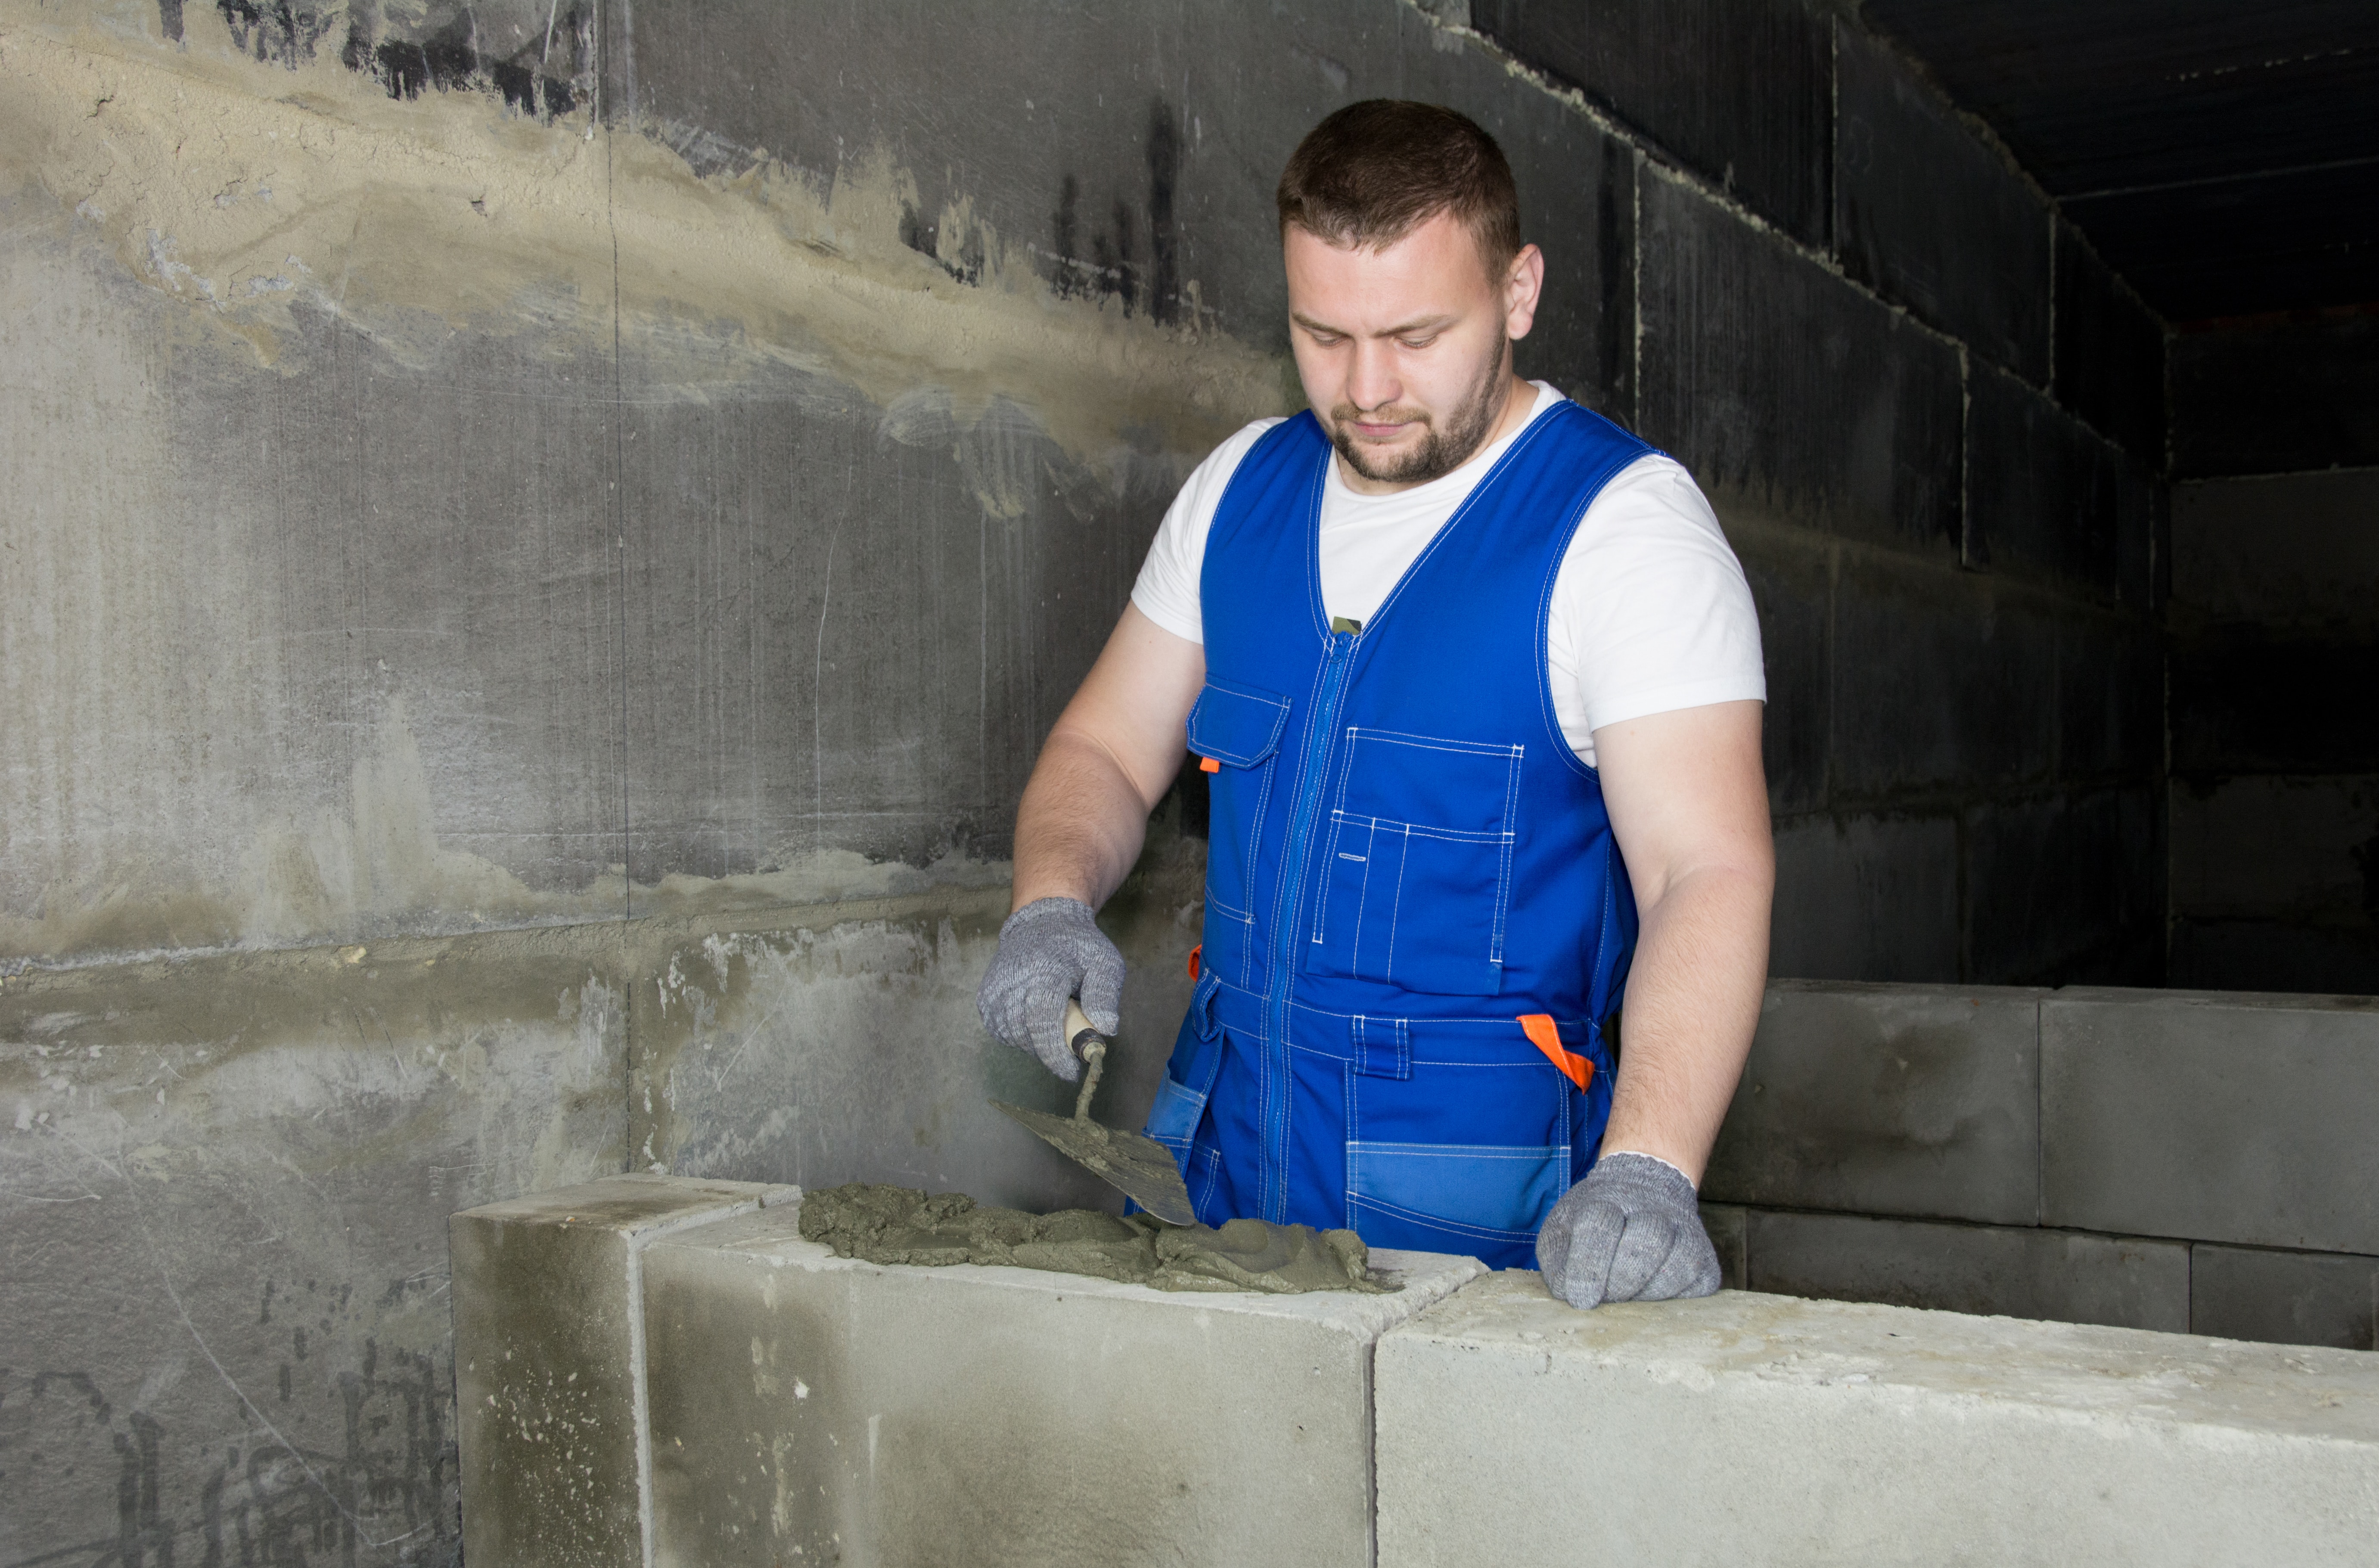 Construction-worker-white-man-grout-concrete-blocks